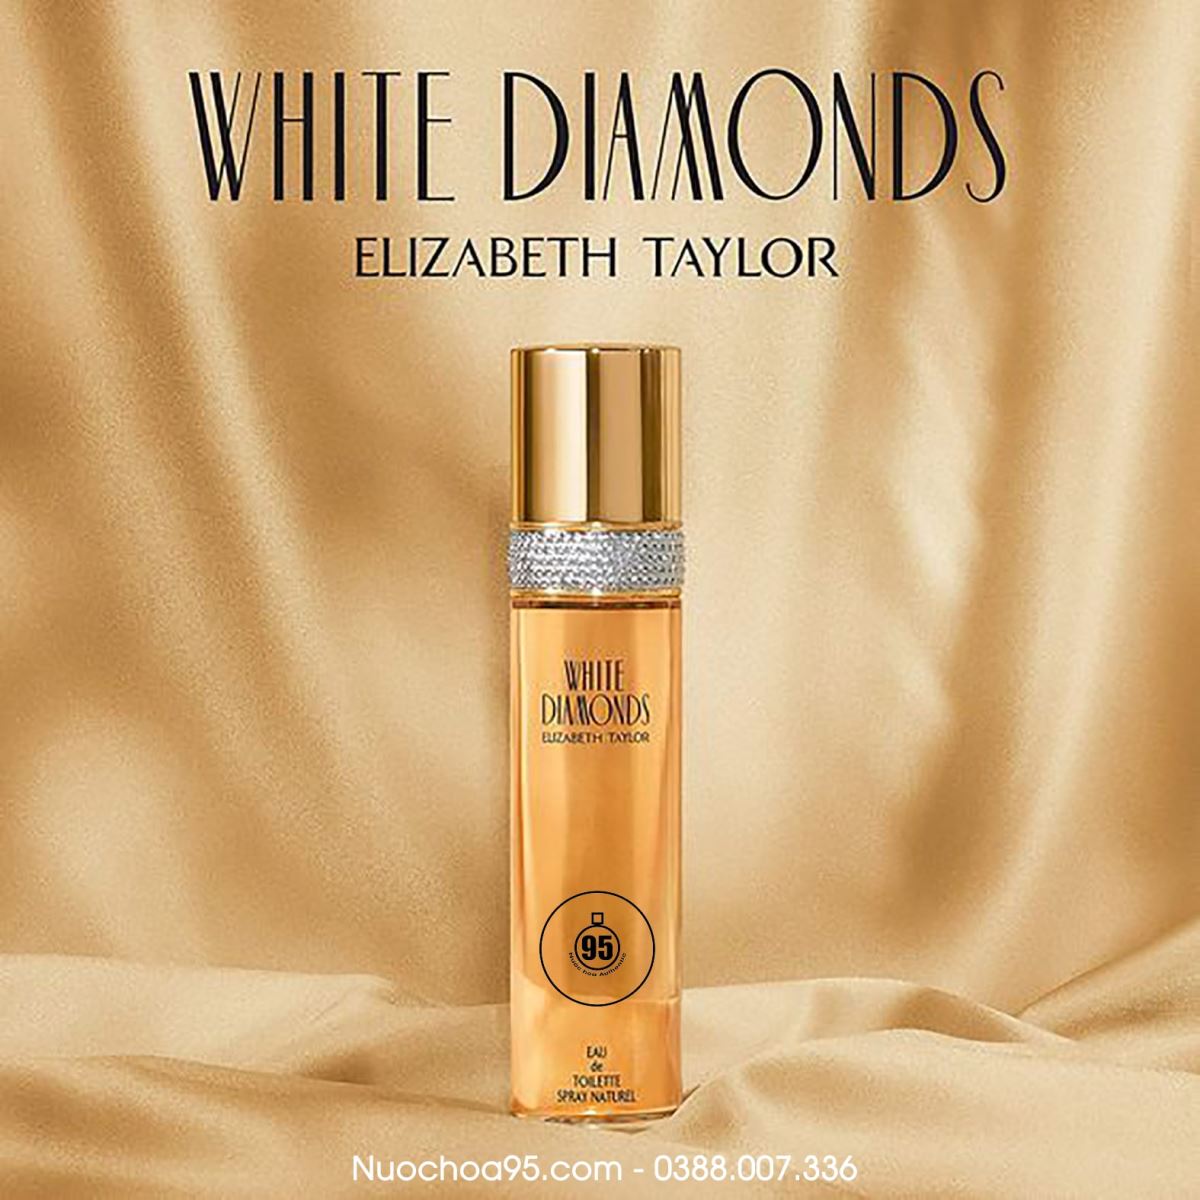 Nước hoa Elizabeth Taylor  White Diamonds - Ảnh 2